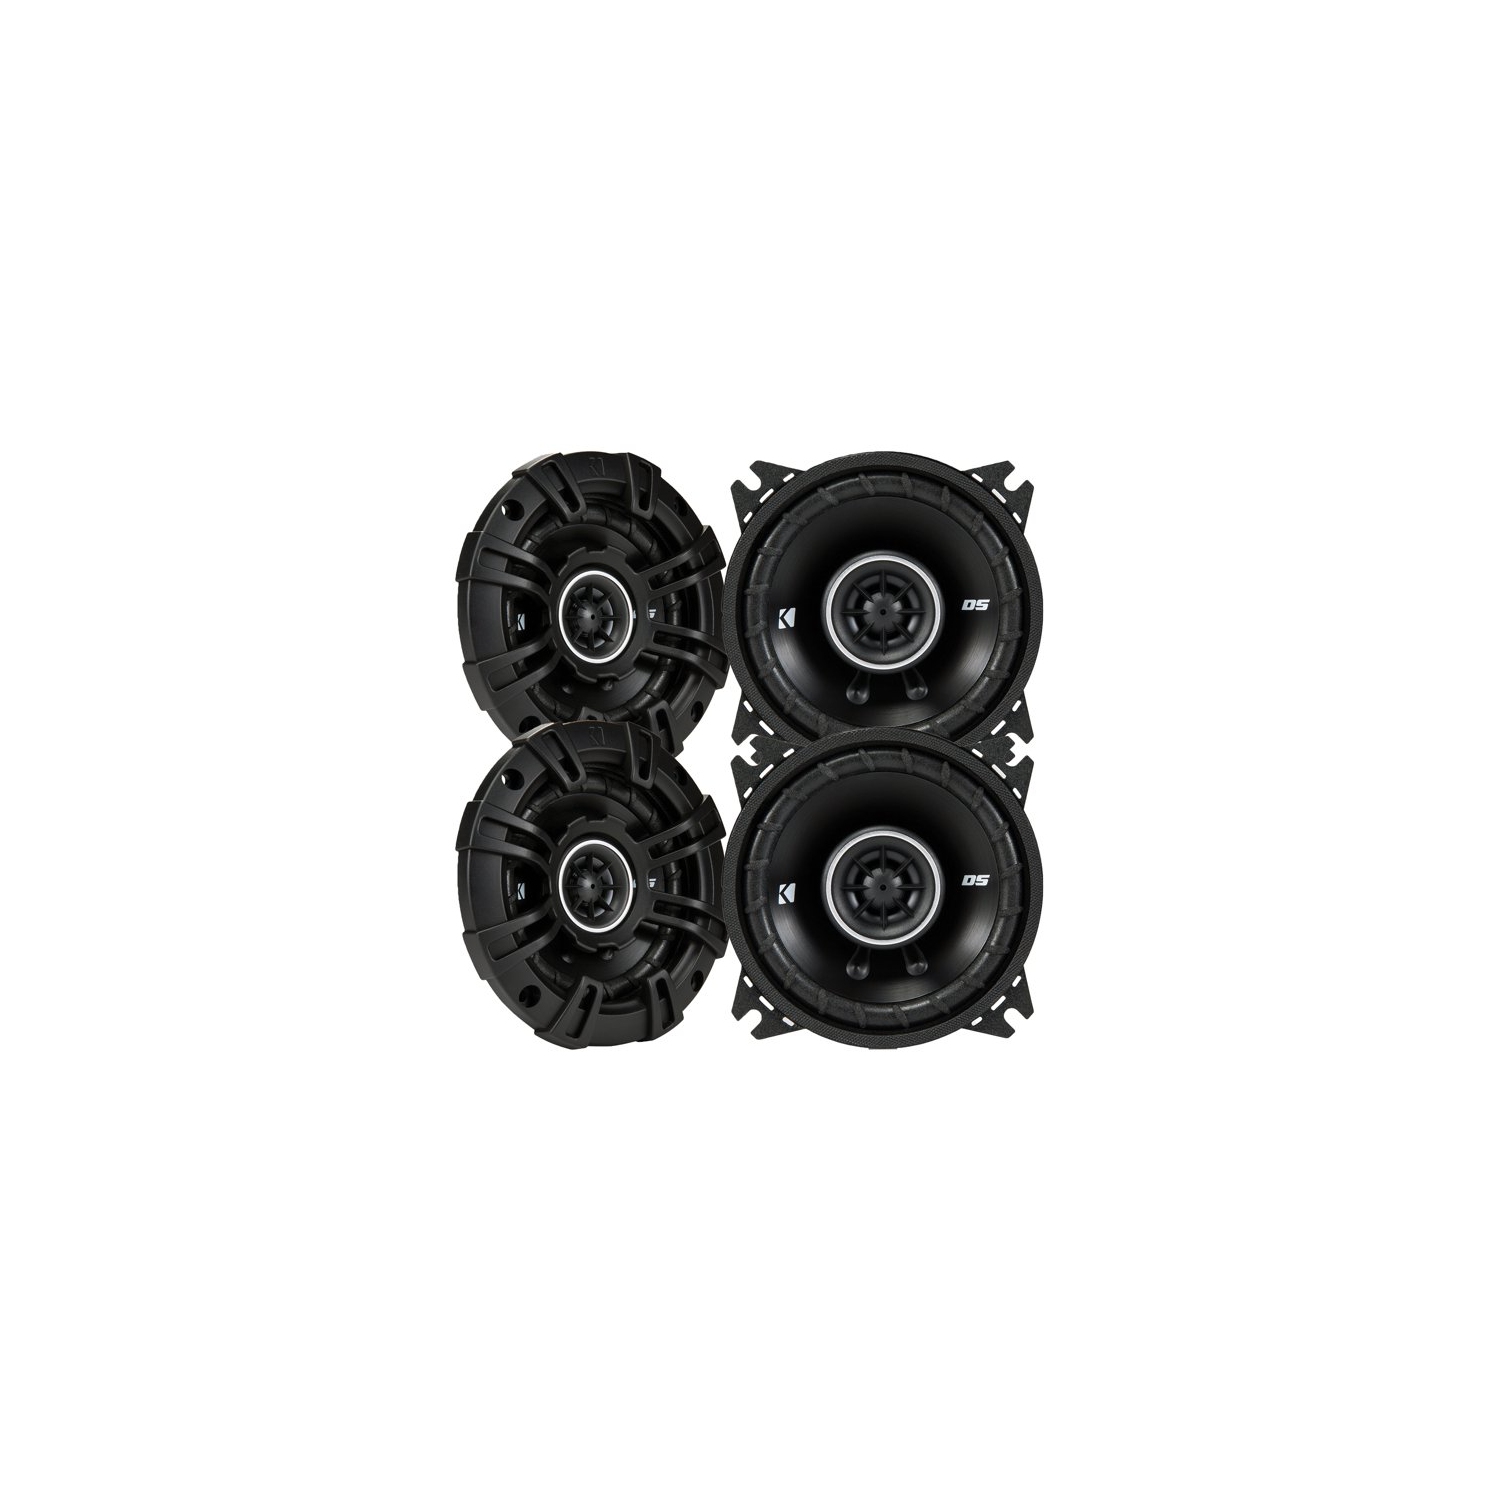 Kicker 43DSC44 D-Series 4-Inch 120 Watt 2-Way Coaxial Speakers